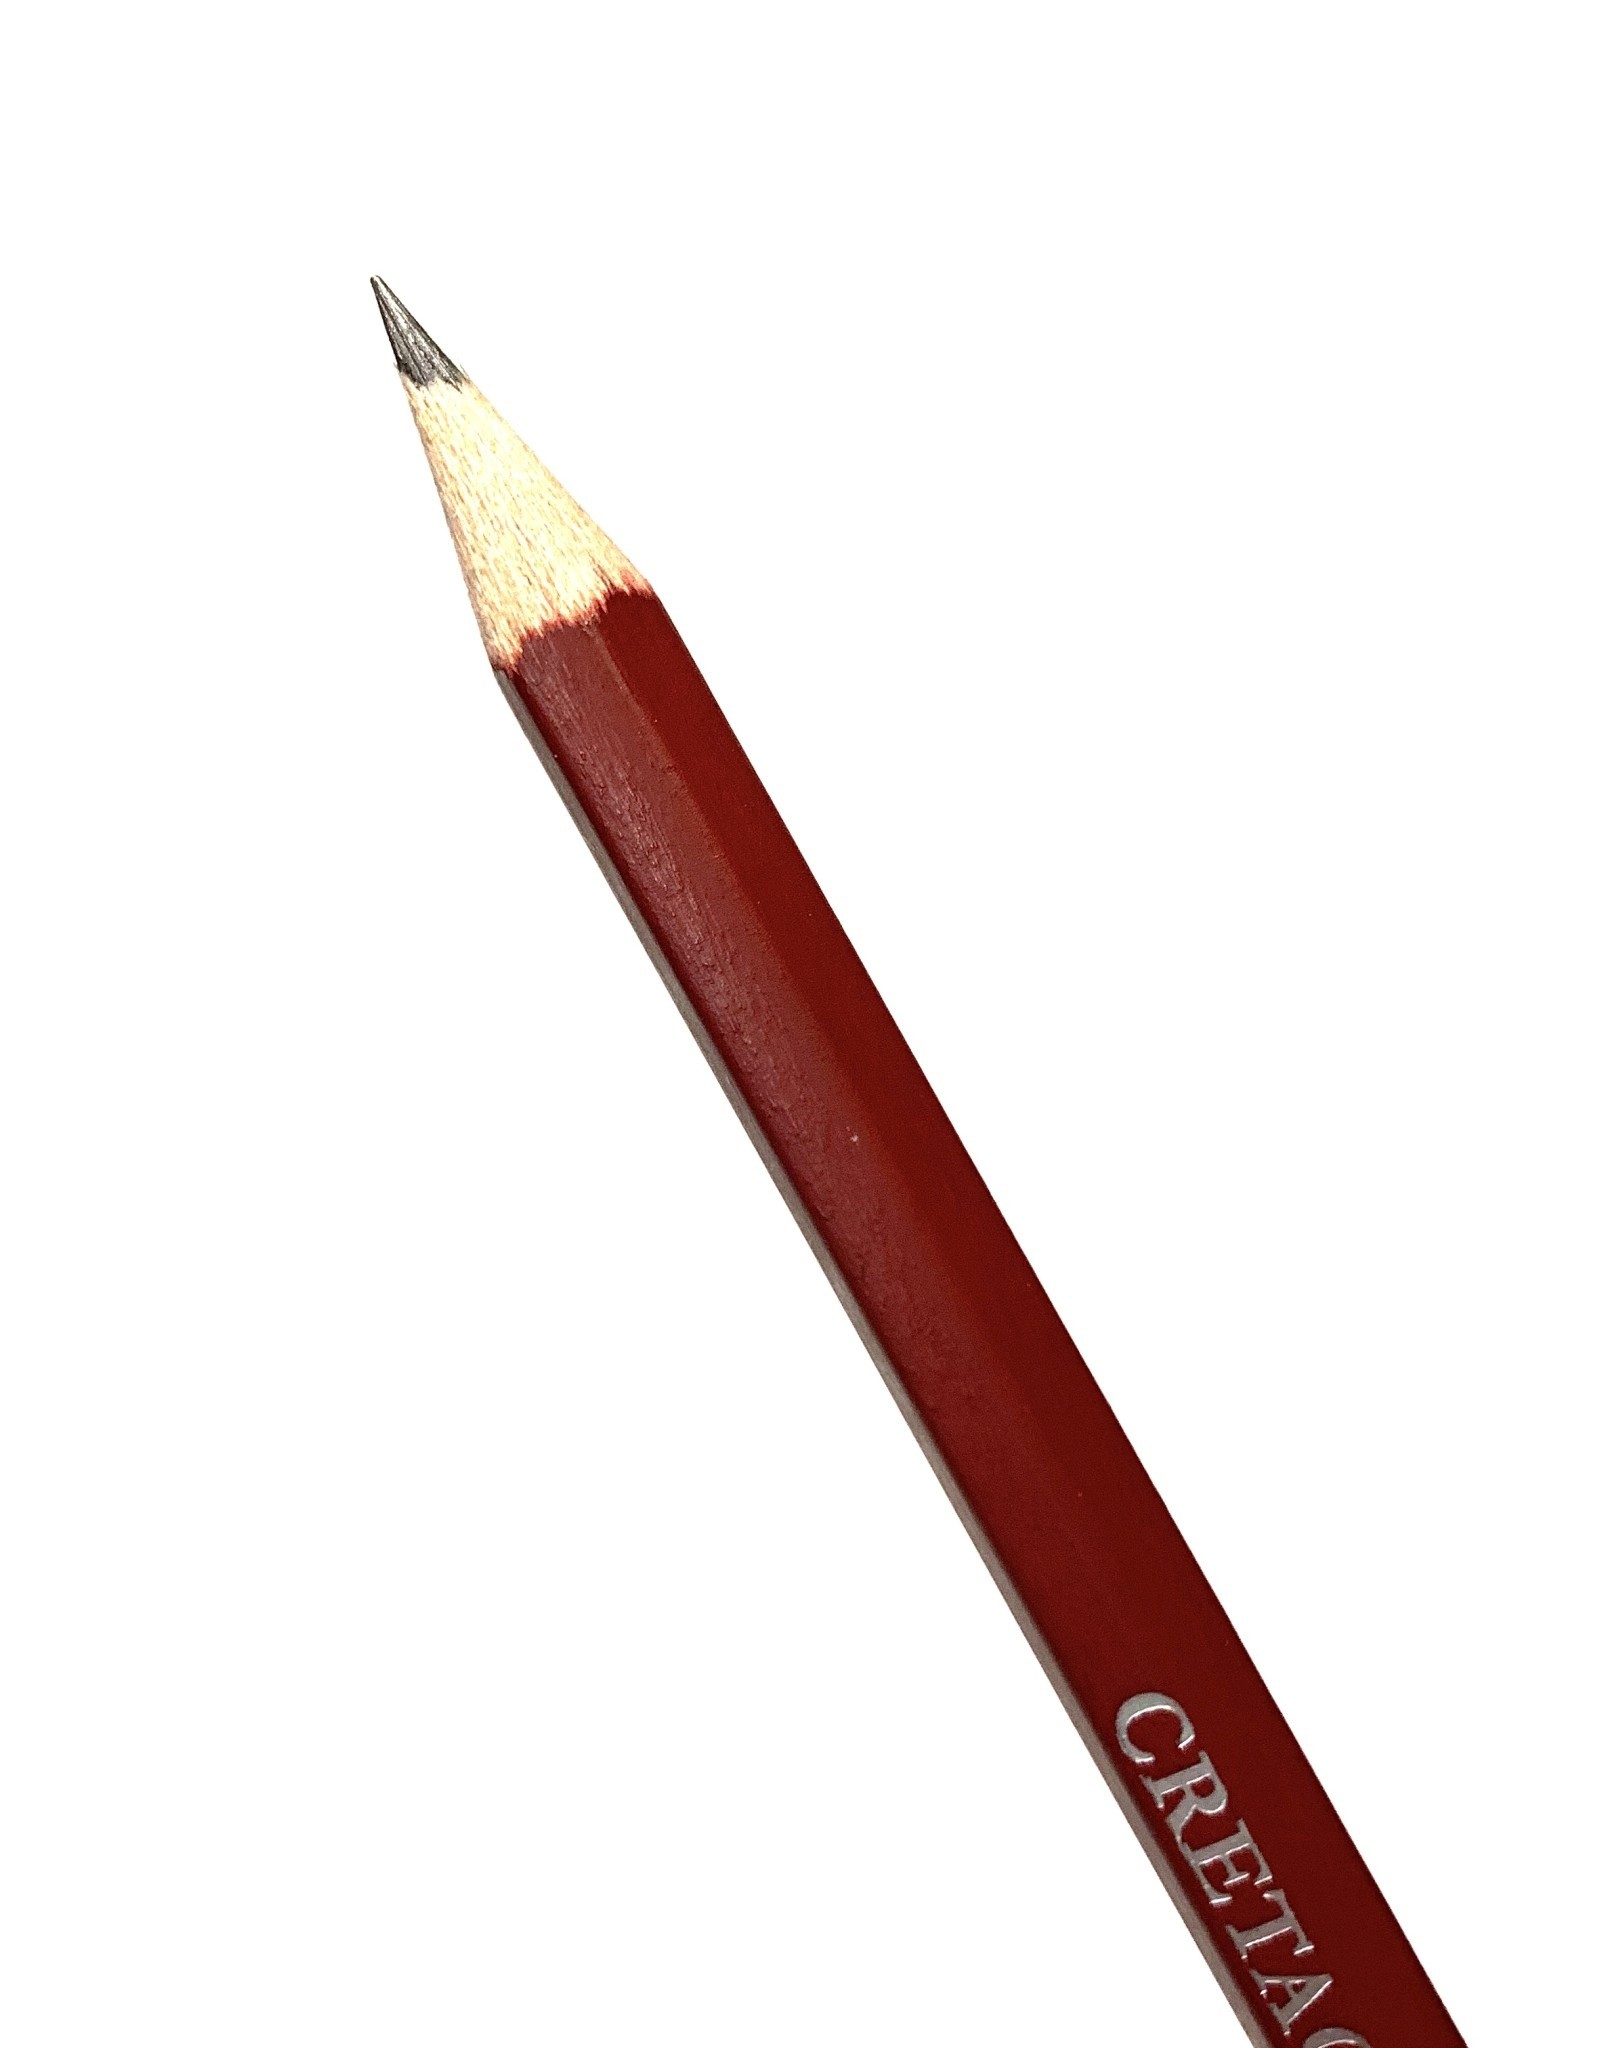 Cretacolor Graphite Pencil, 5B